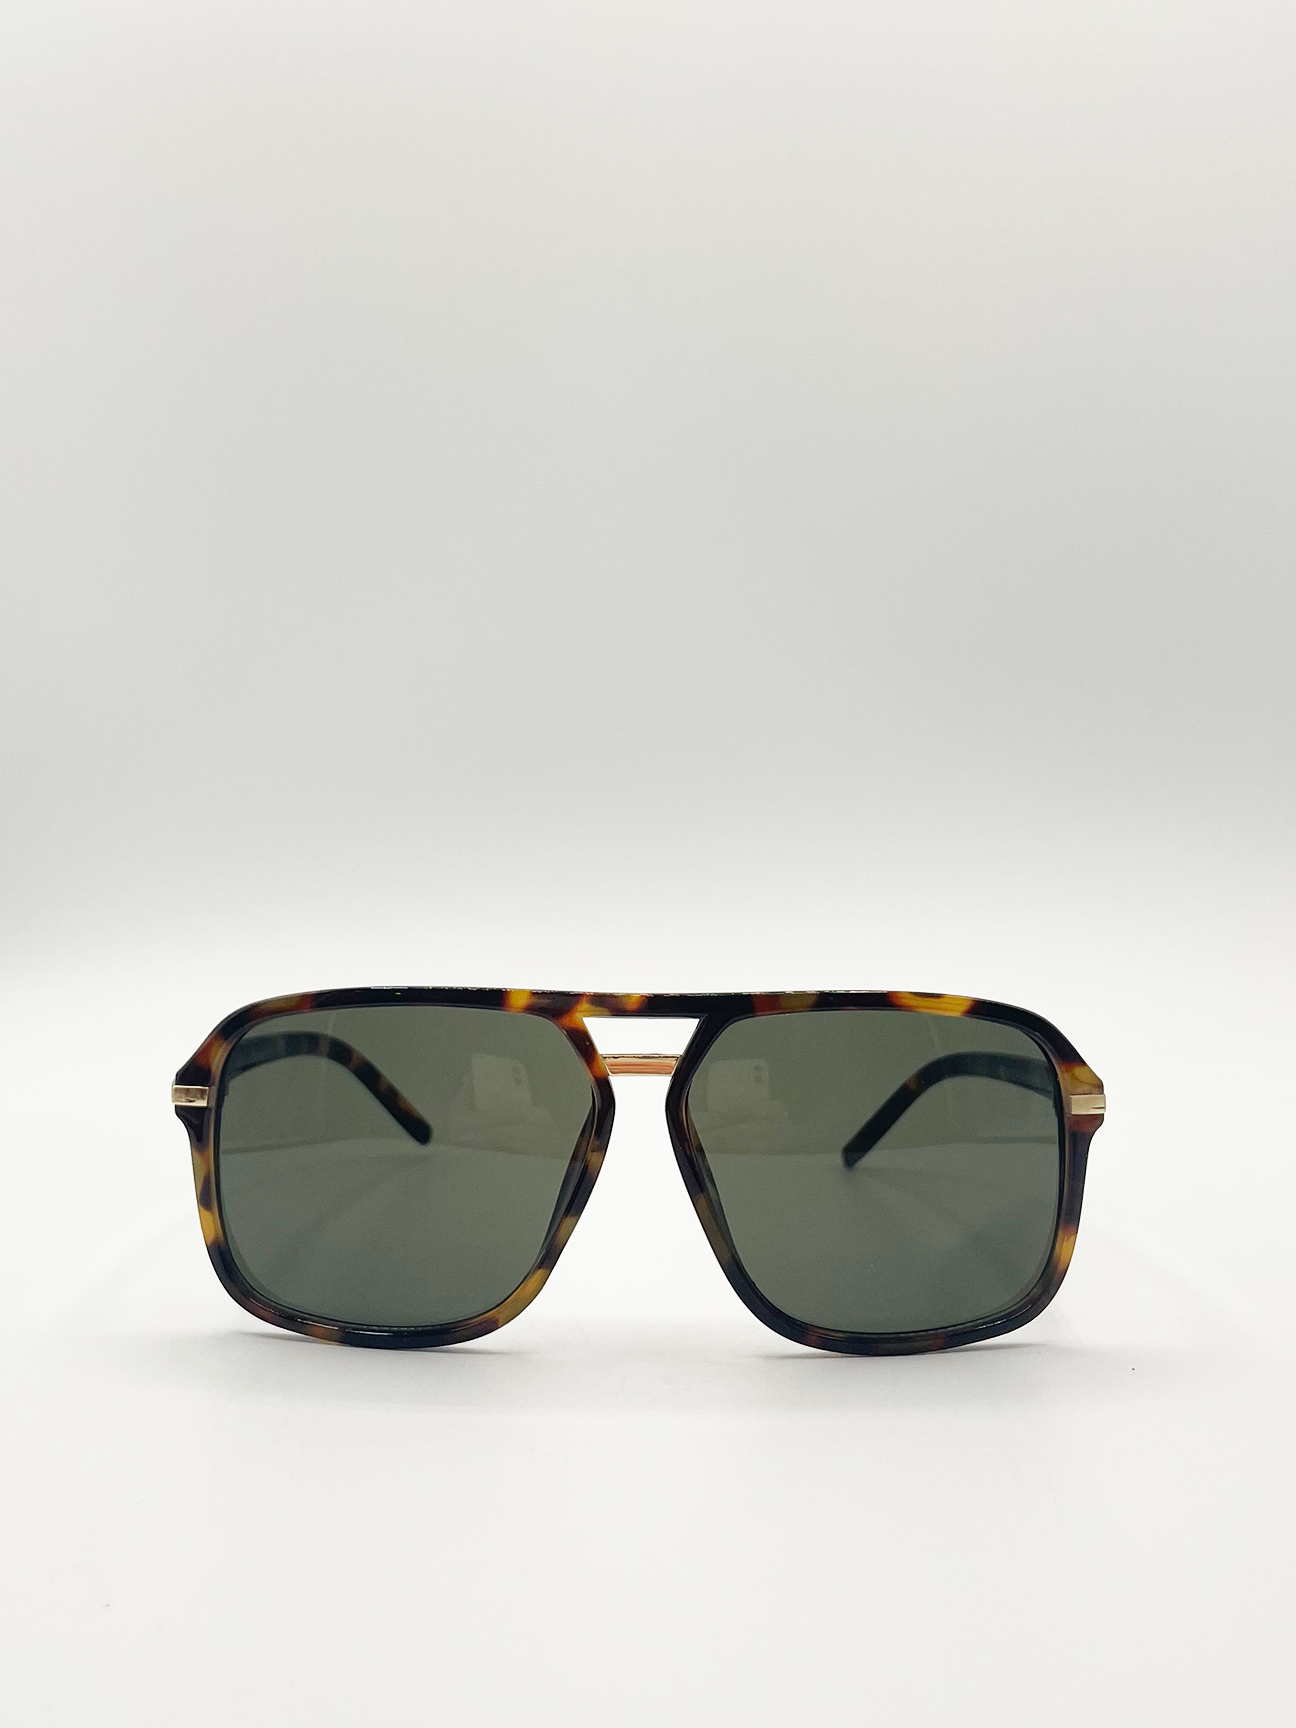 Tortoiseshell Navigator Sunglasses with Green Lenses